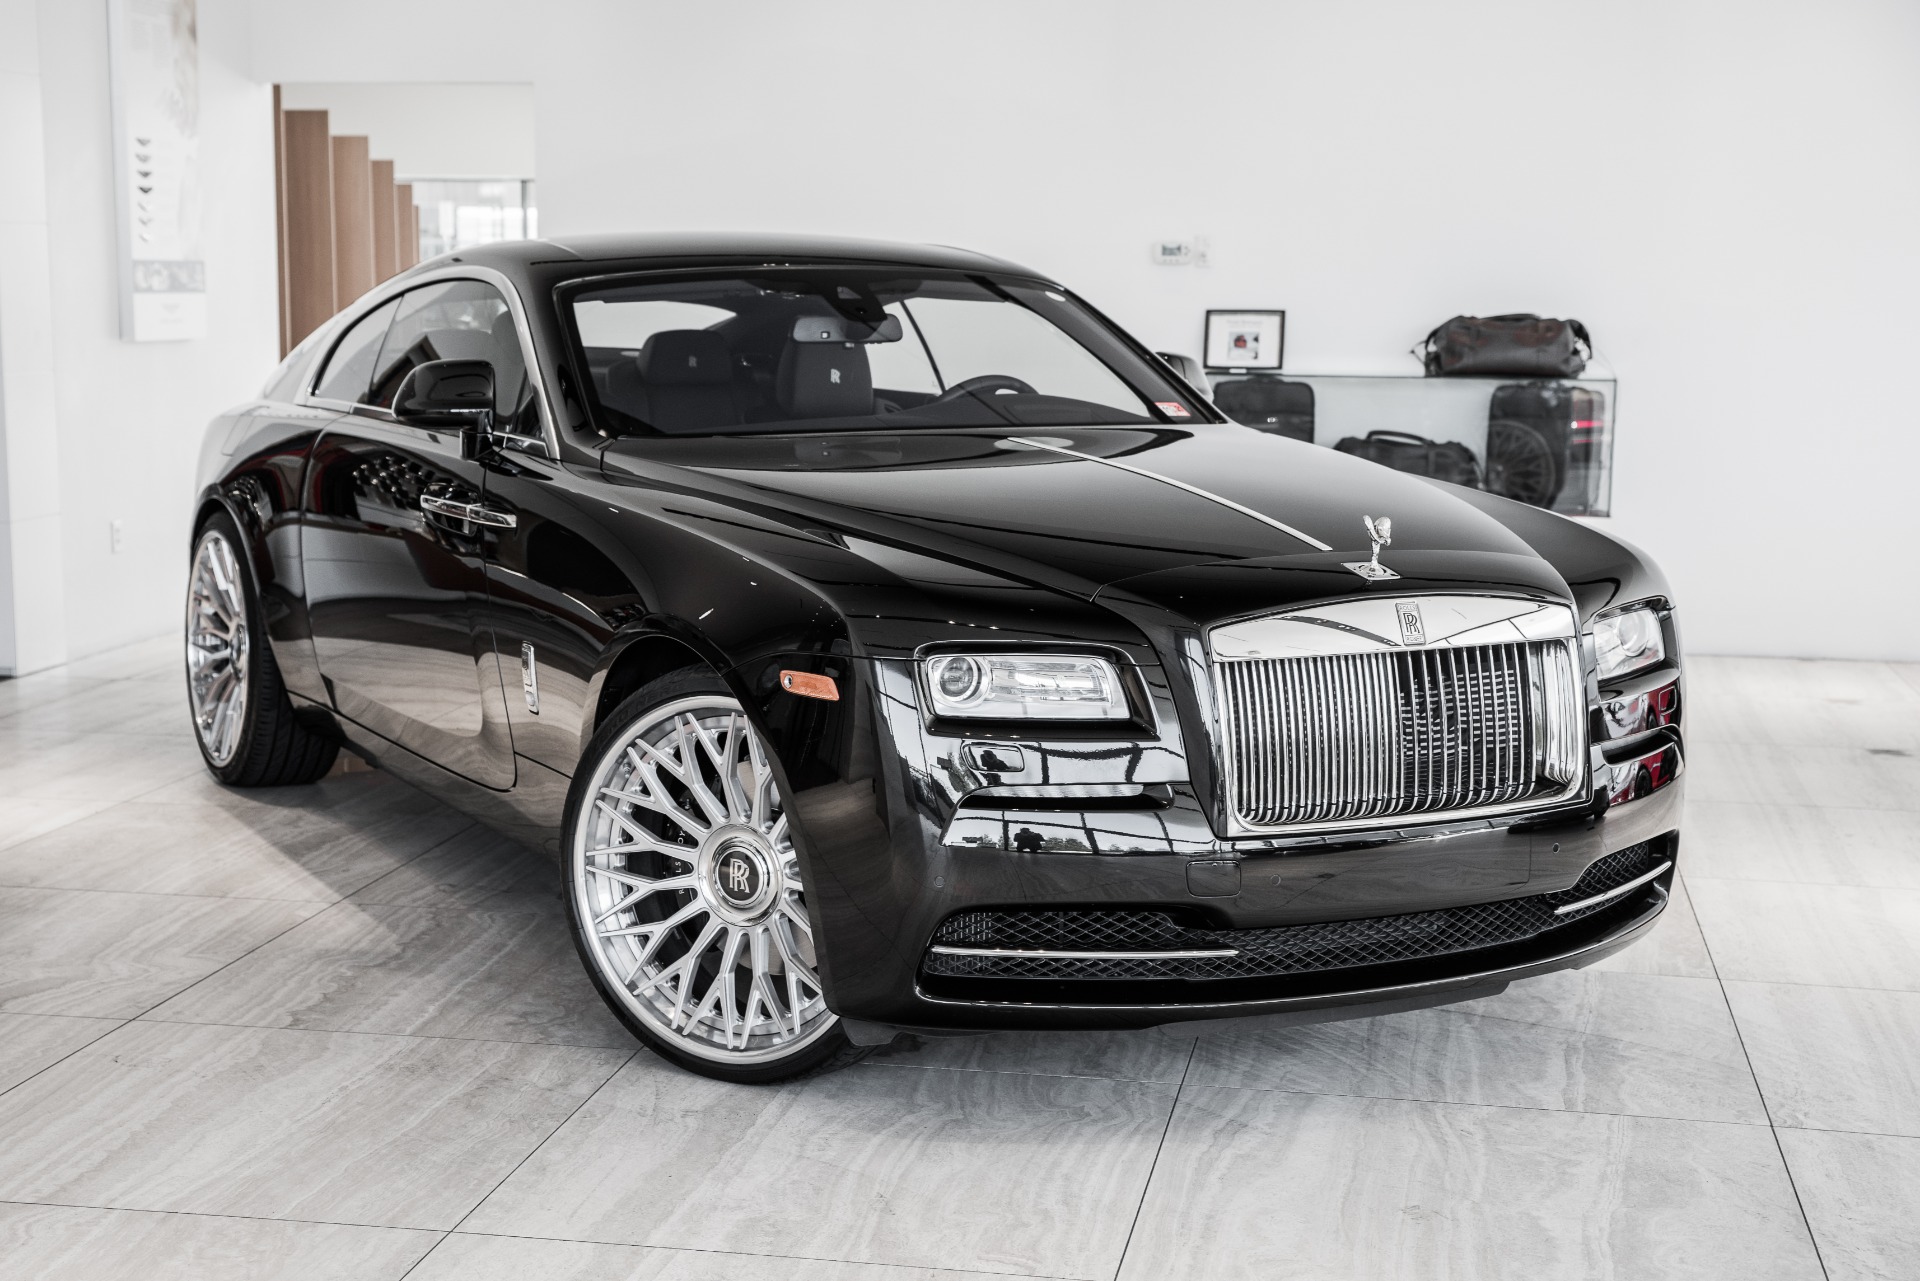 Rolls Royce Wraith 2015 STD Interior Car Photos  Overdrive